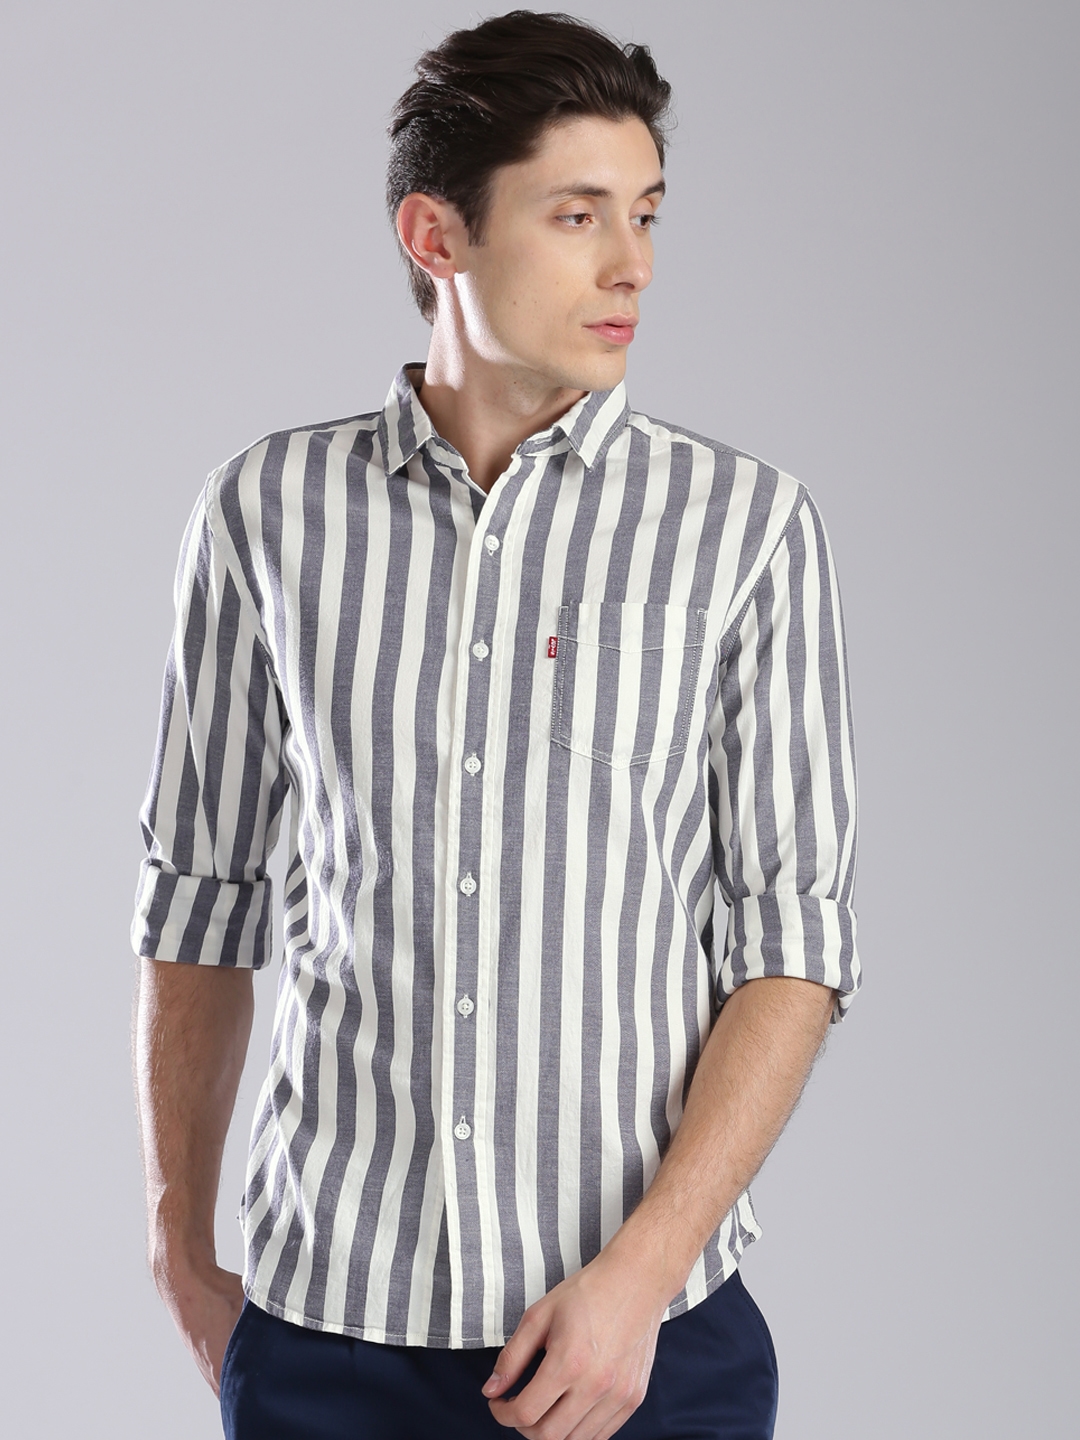 Introducir 55+ imagen levi’s striped shirt mens